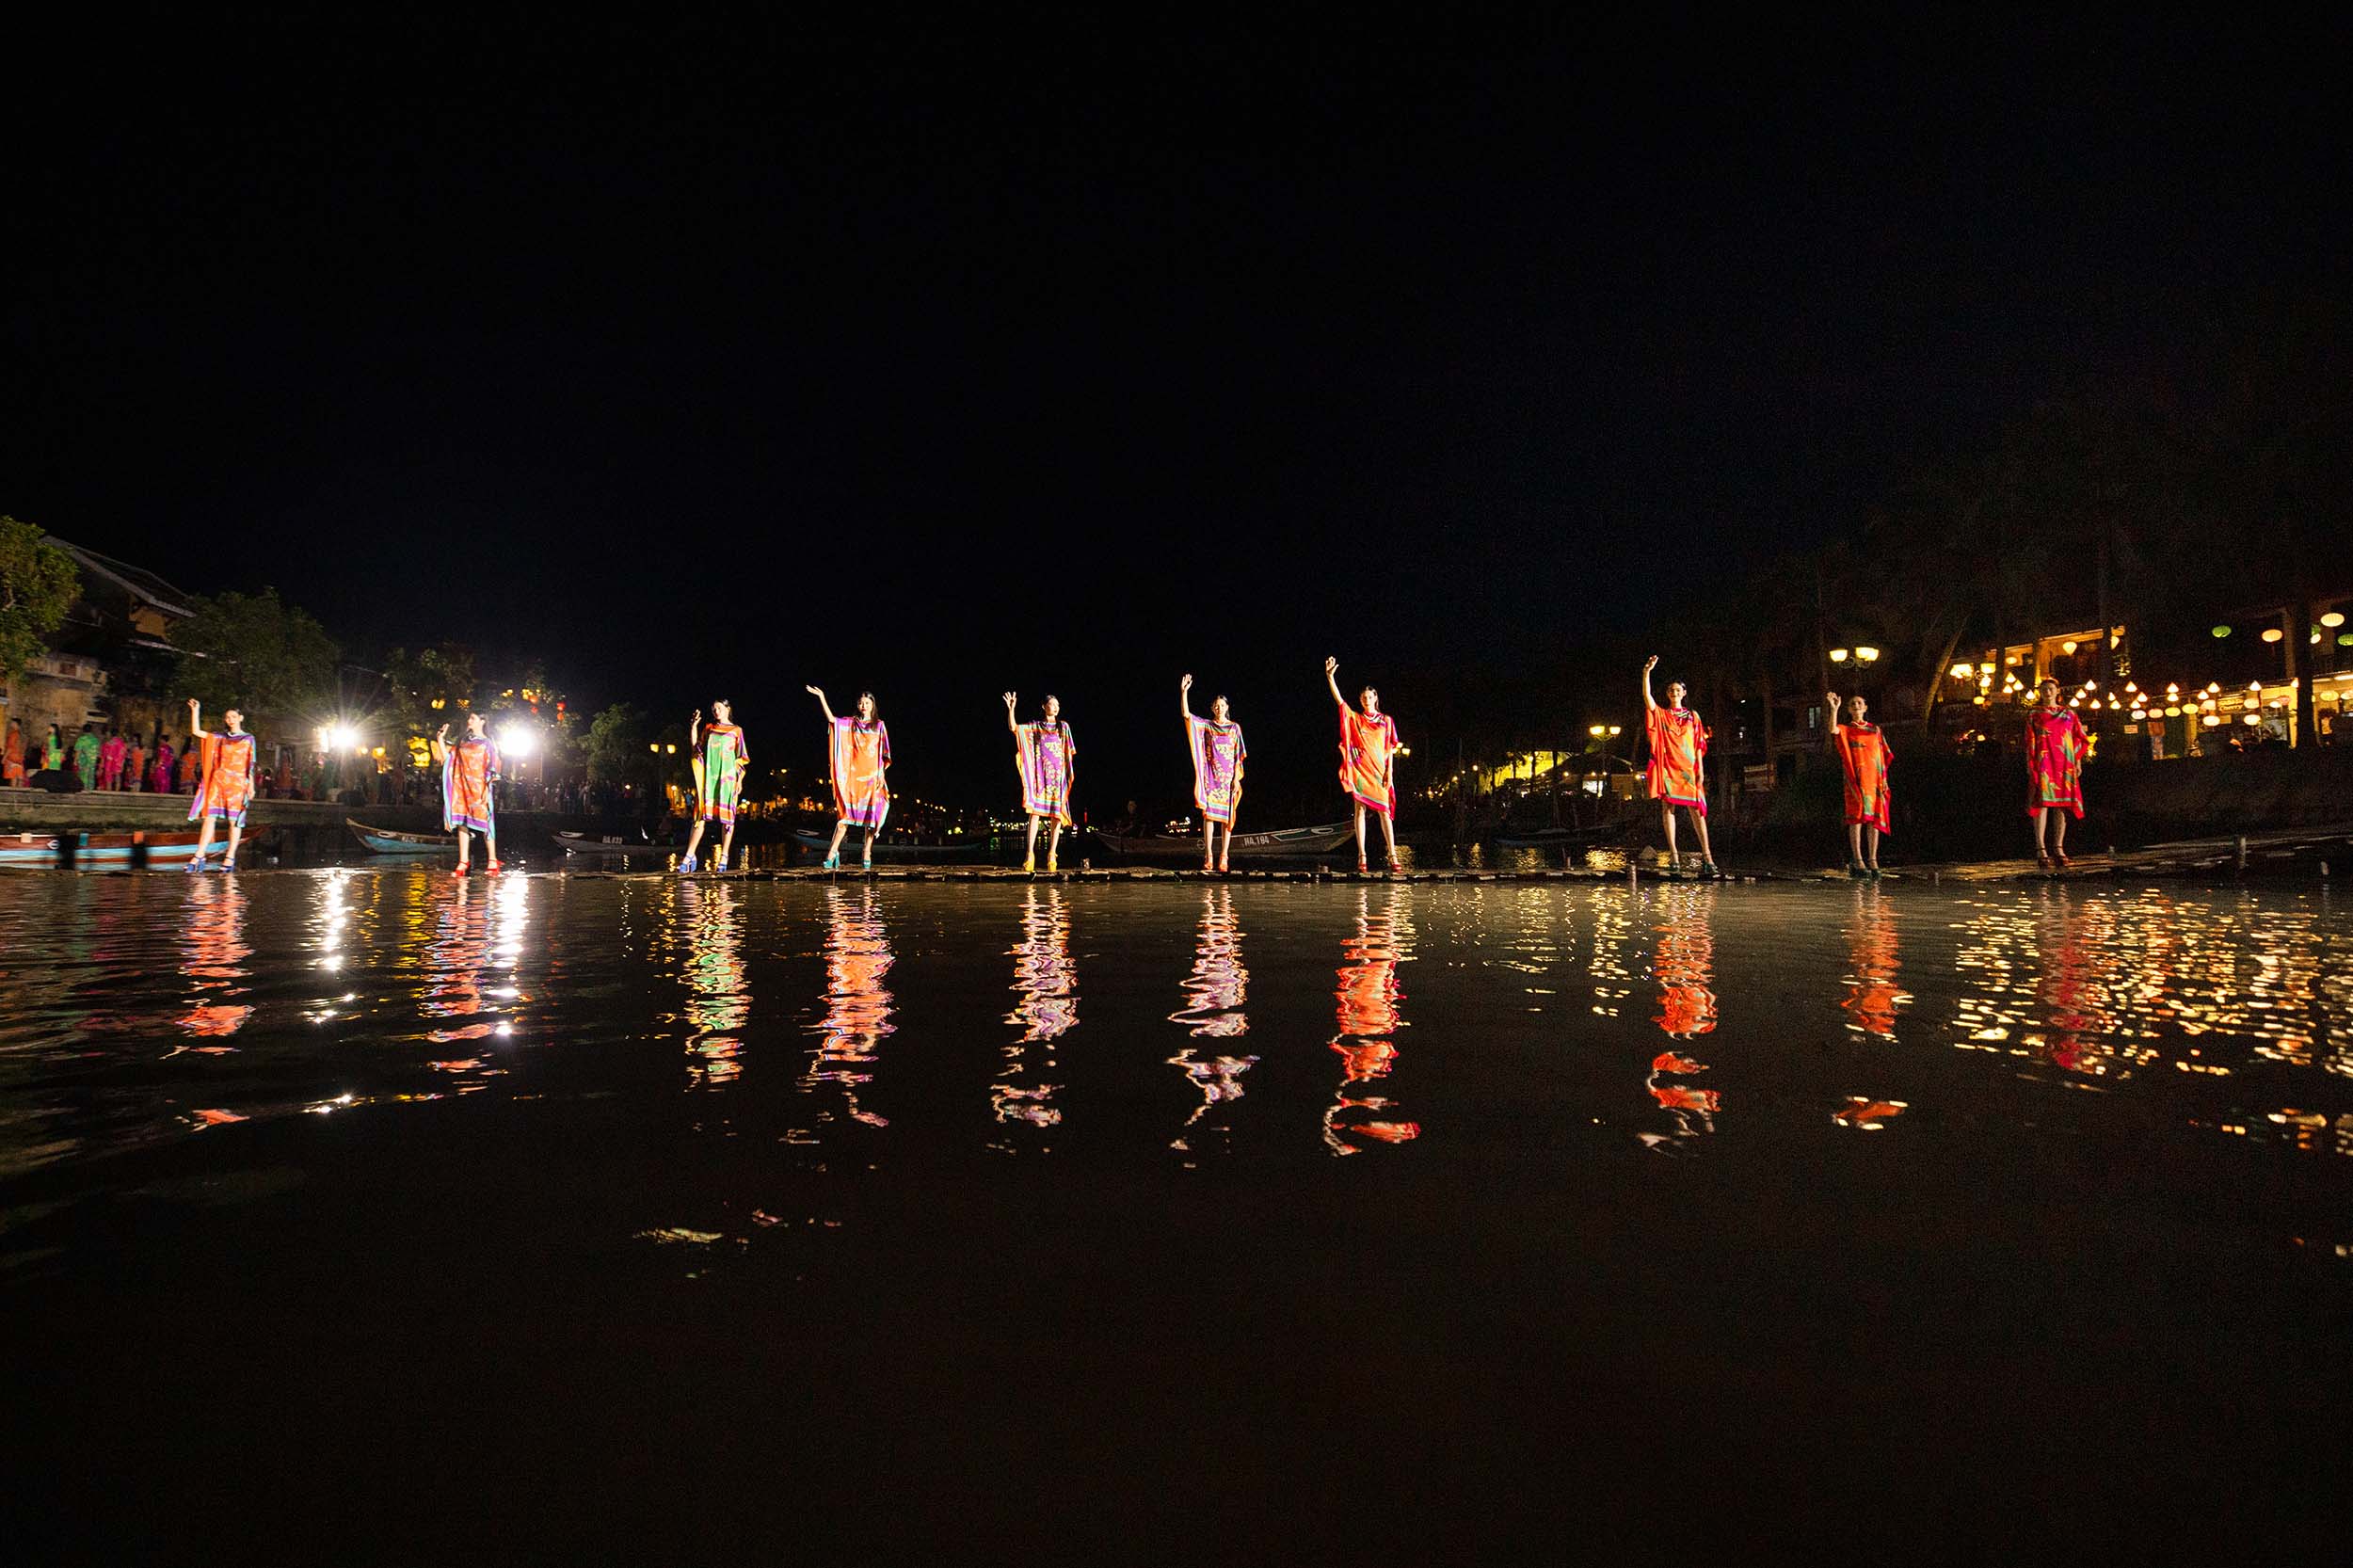 NTK Việt dựng sàn runway nổi trên mặt nước, điểm nhấn khó quên trong show diễn Vùng trời bình yên